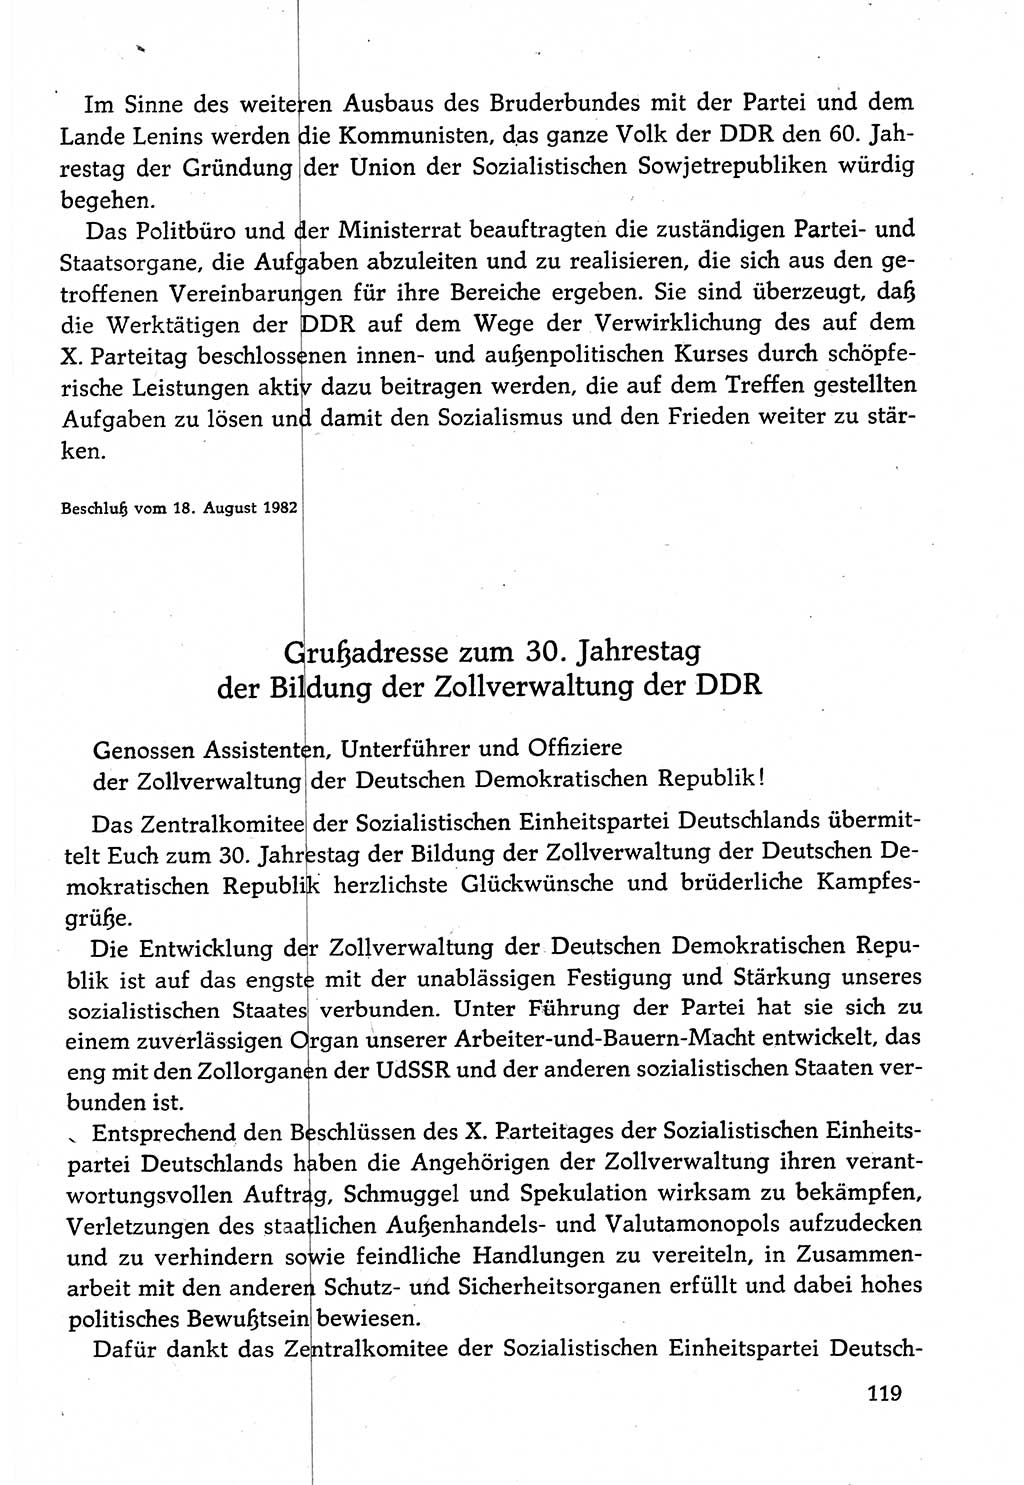 Dokumente der Sozialistischen Einheitspartei Deutschlands (SED) [Deutsche Demokratische Republik (DDR)] 1982-1983, Seite 119 (Dok. SED DDR 1982-1983, S. 119)